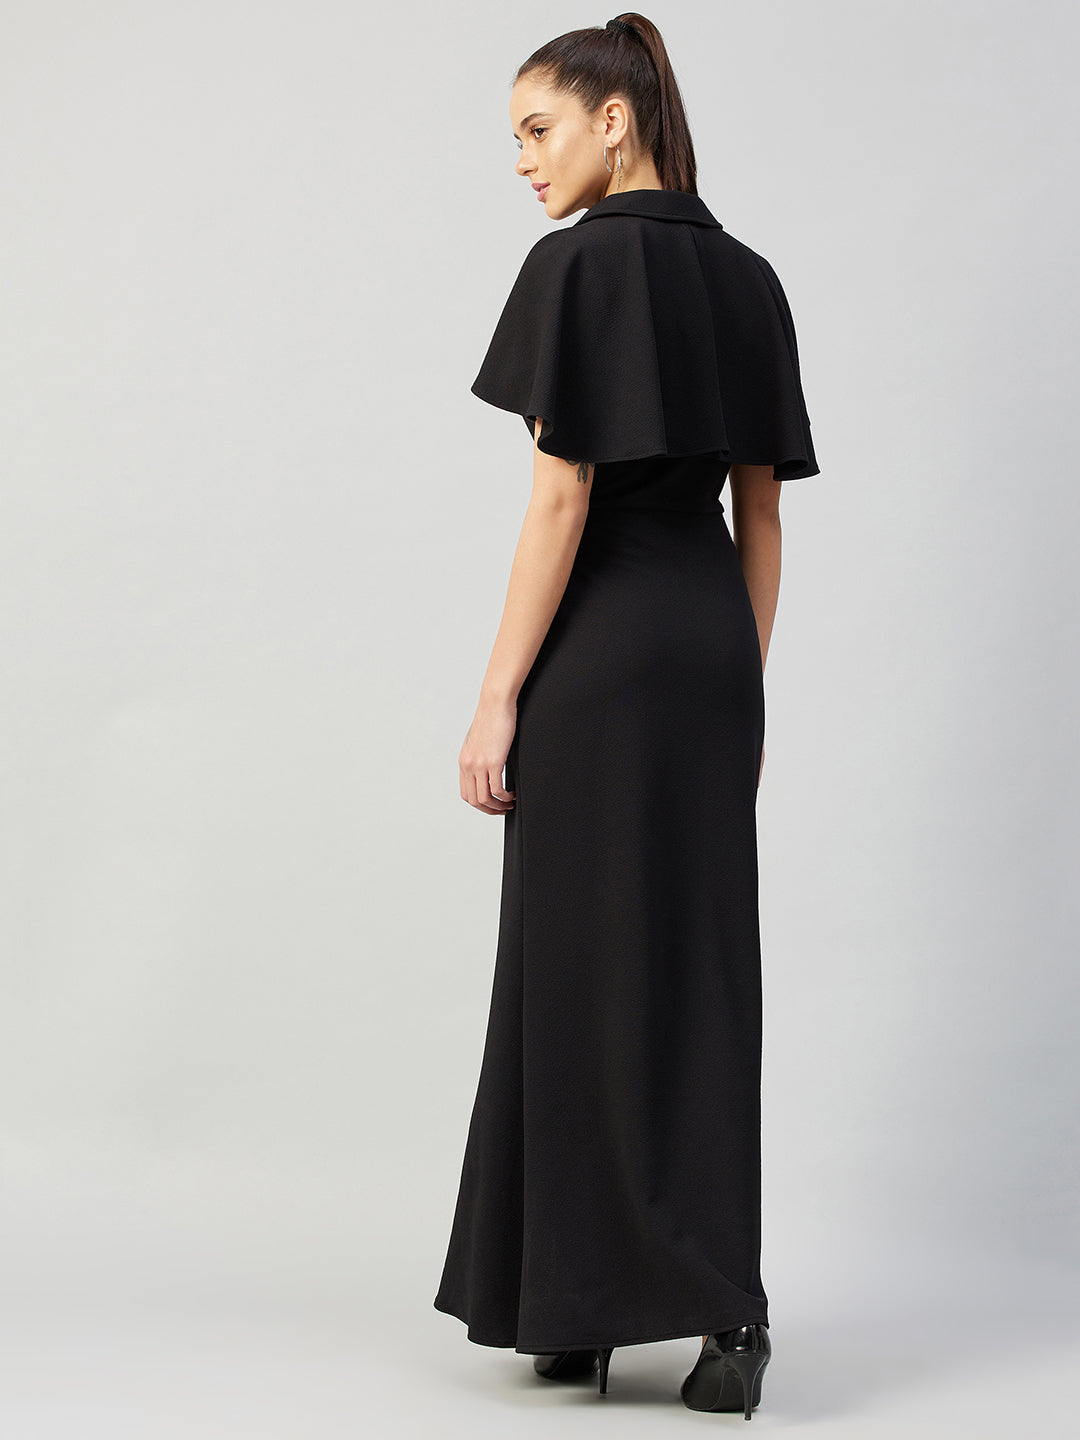 Athena Black Maxi Dress - Athena Lifestyle